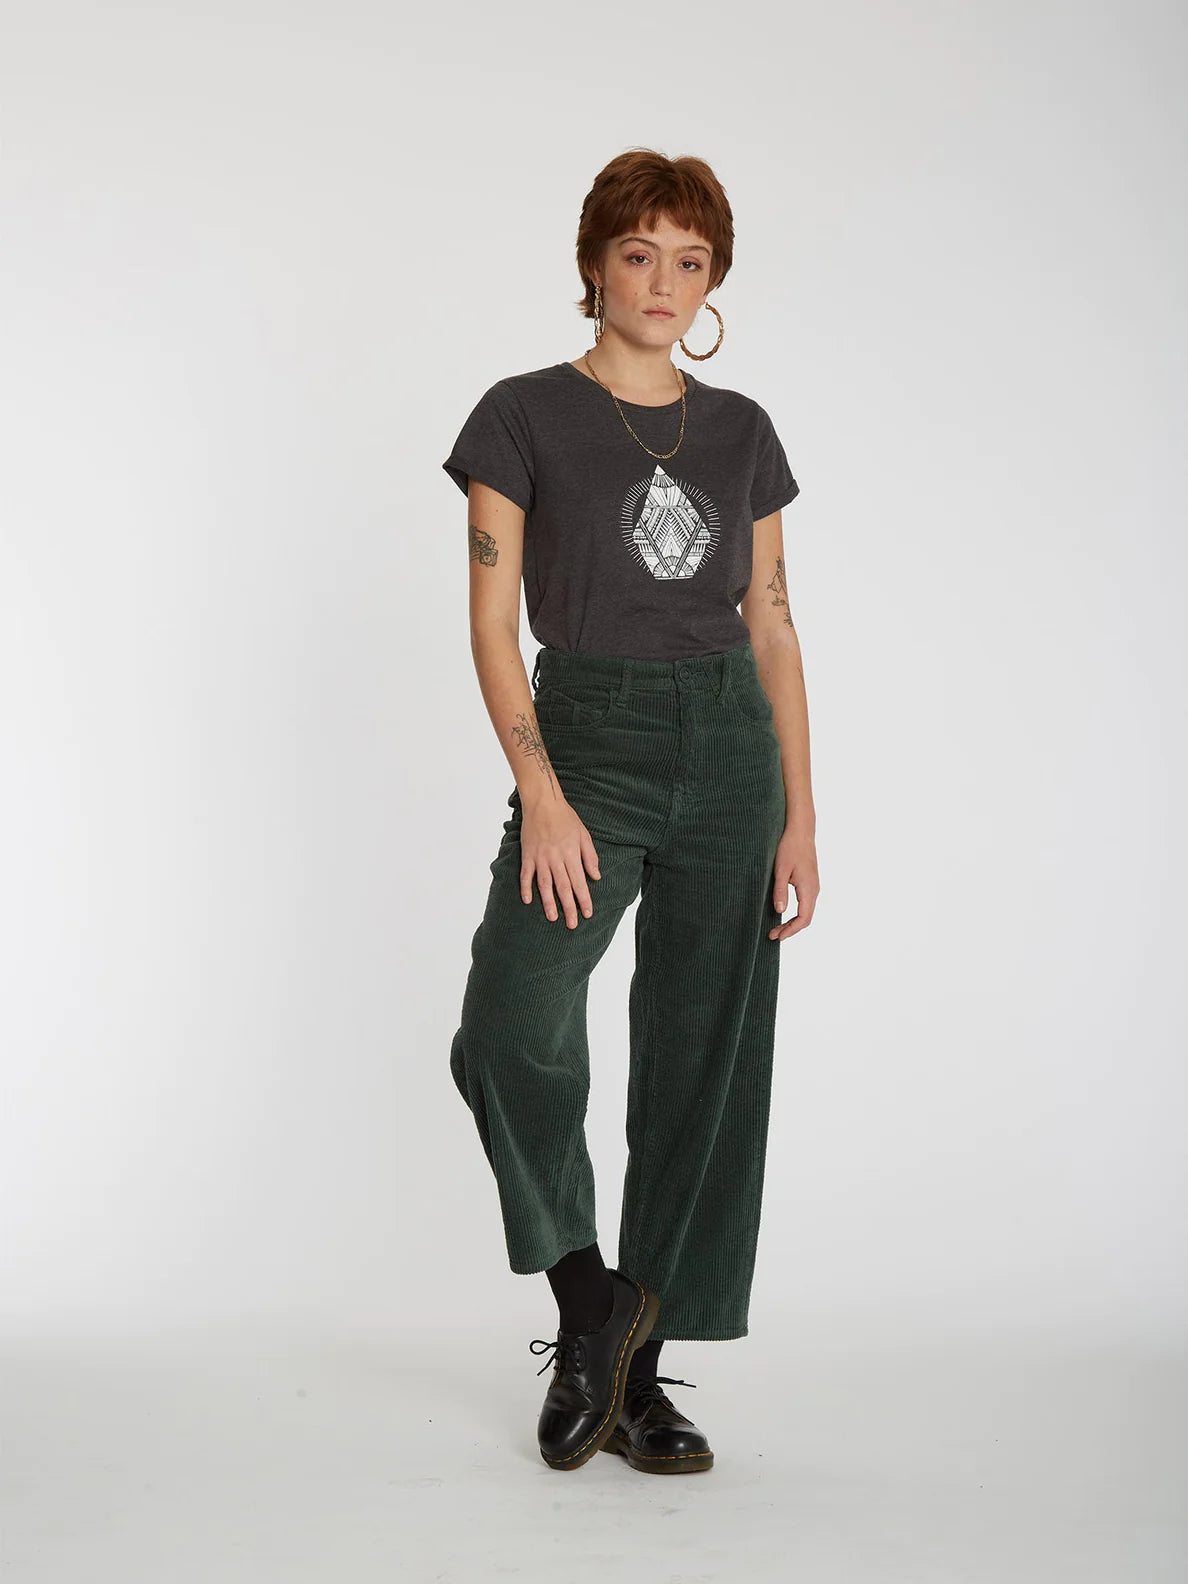 Camiseta Chica Volcom Radical Daze Tee Charcoal | Camisetas manga corta de mujer | Volcom Shop | surfdevils.com